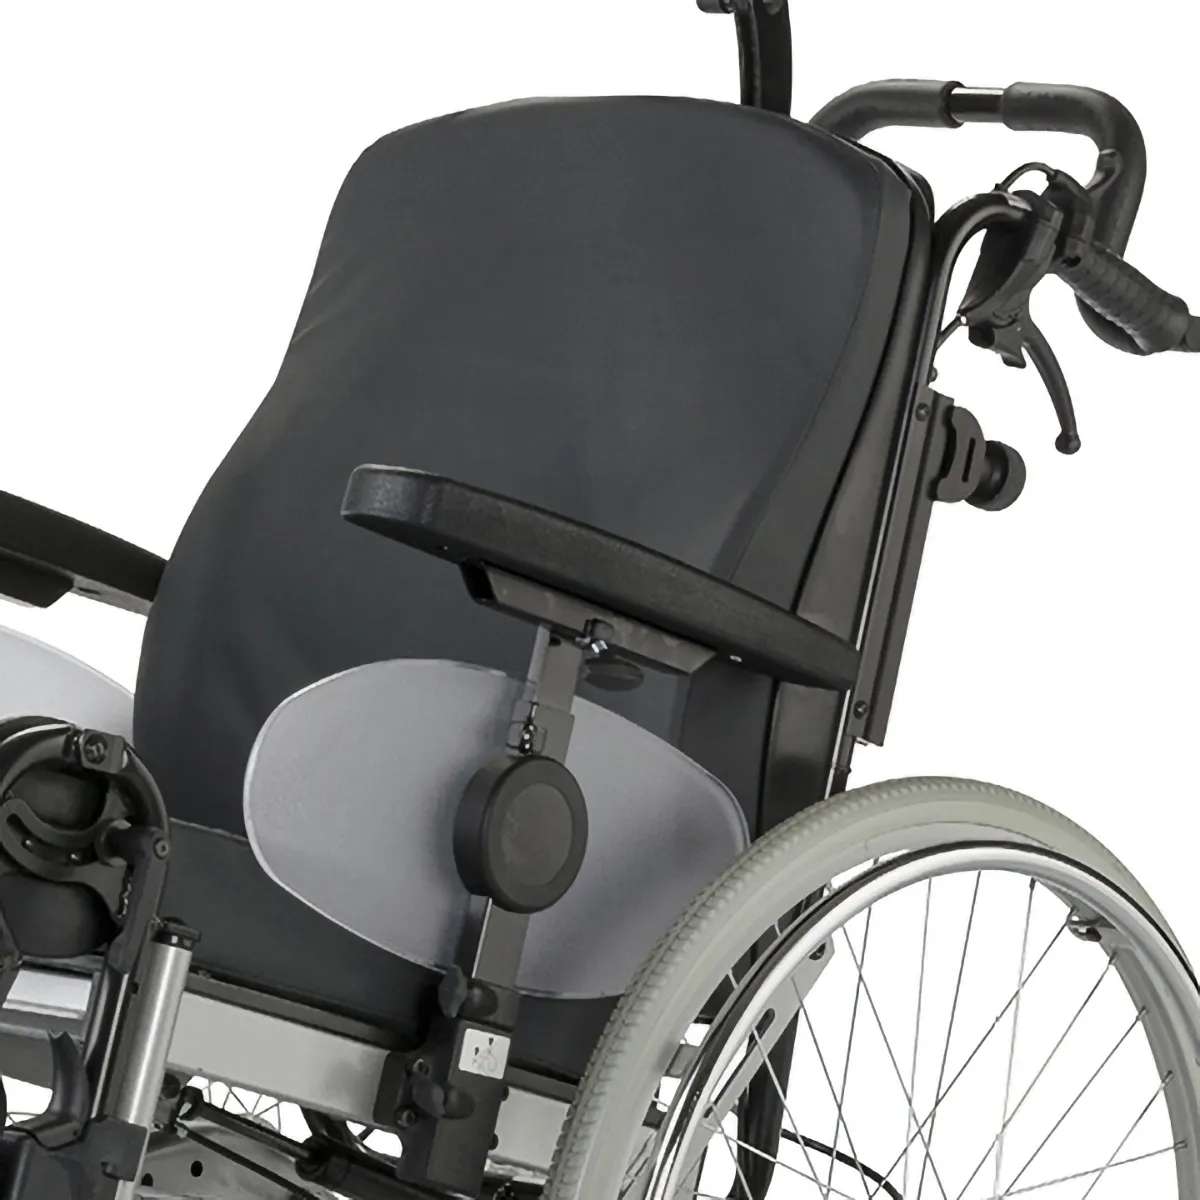 Многофункциональная инвалидная кресло-коляска SOLERO